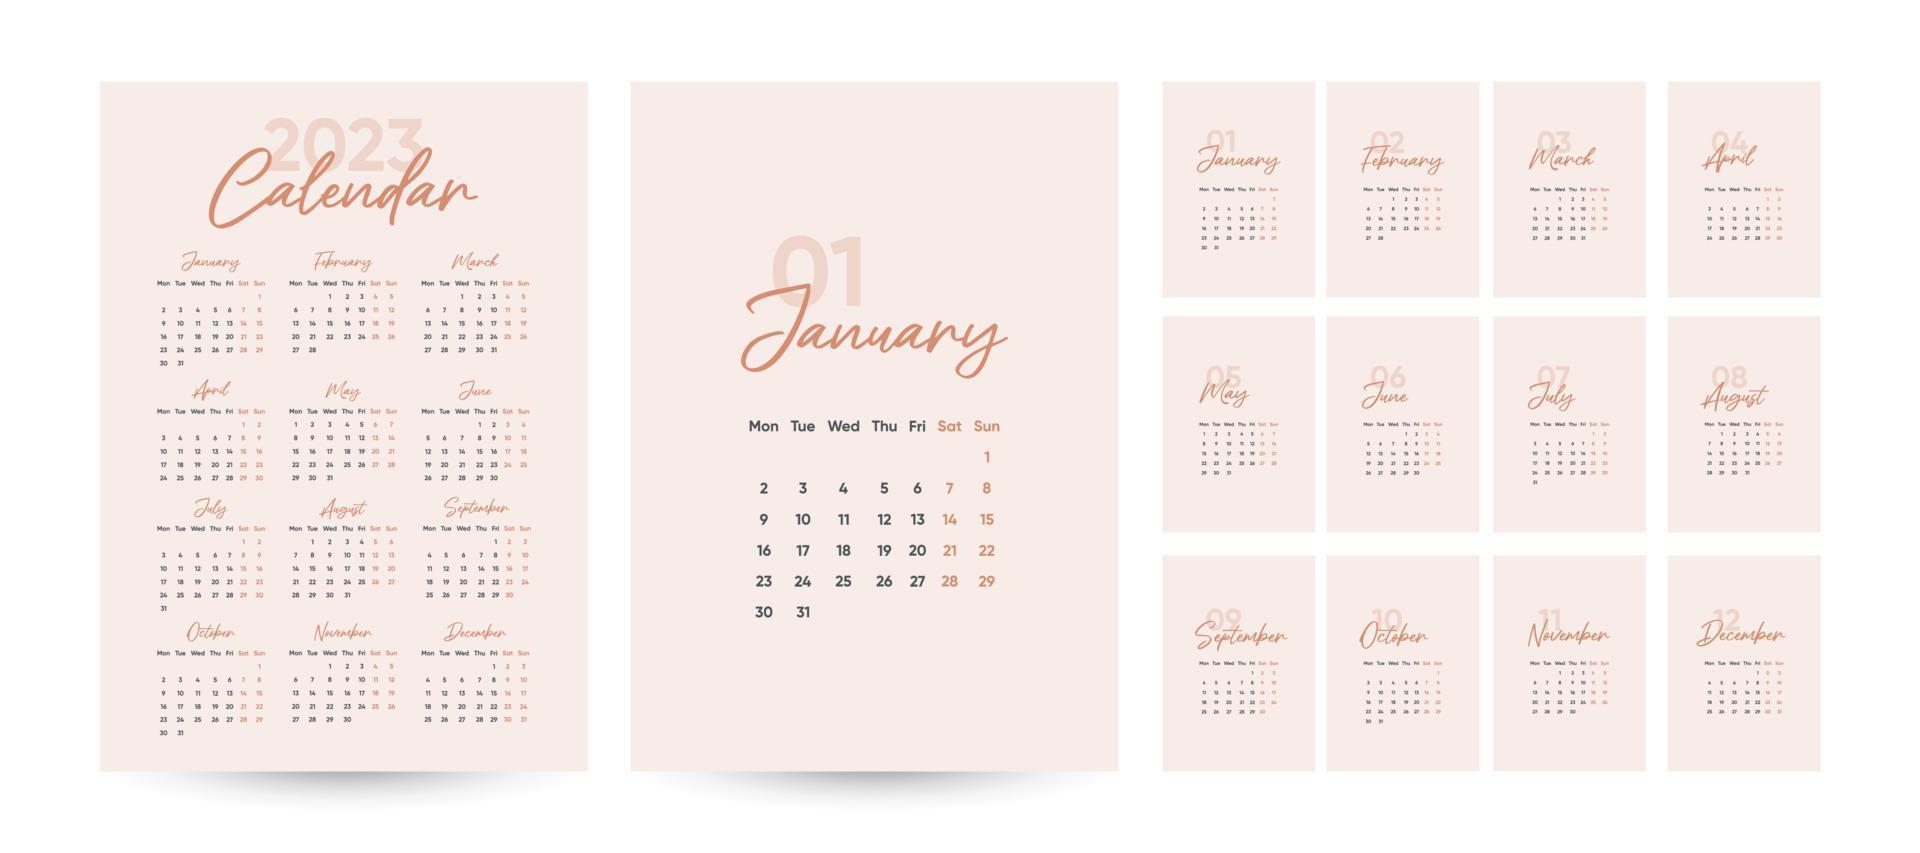 plantilla de calendario mensual 2023 en estilo minimalista moderno, concepto de portada, conjunto de calendario de escritorio de 12 páginas, diseño de planificador de calendario mínimo 2023 para plantilla de impresión vector